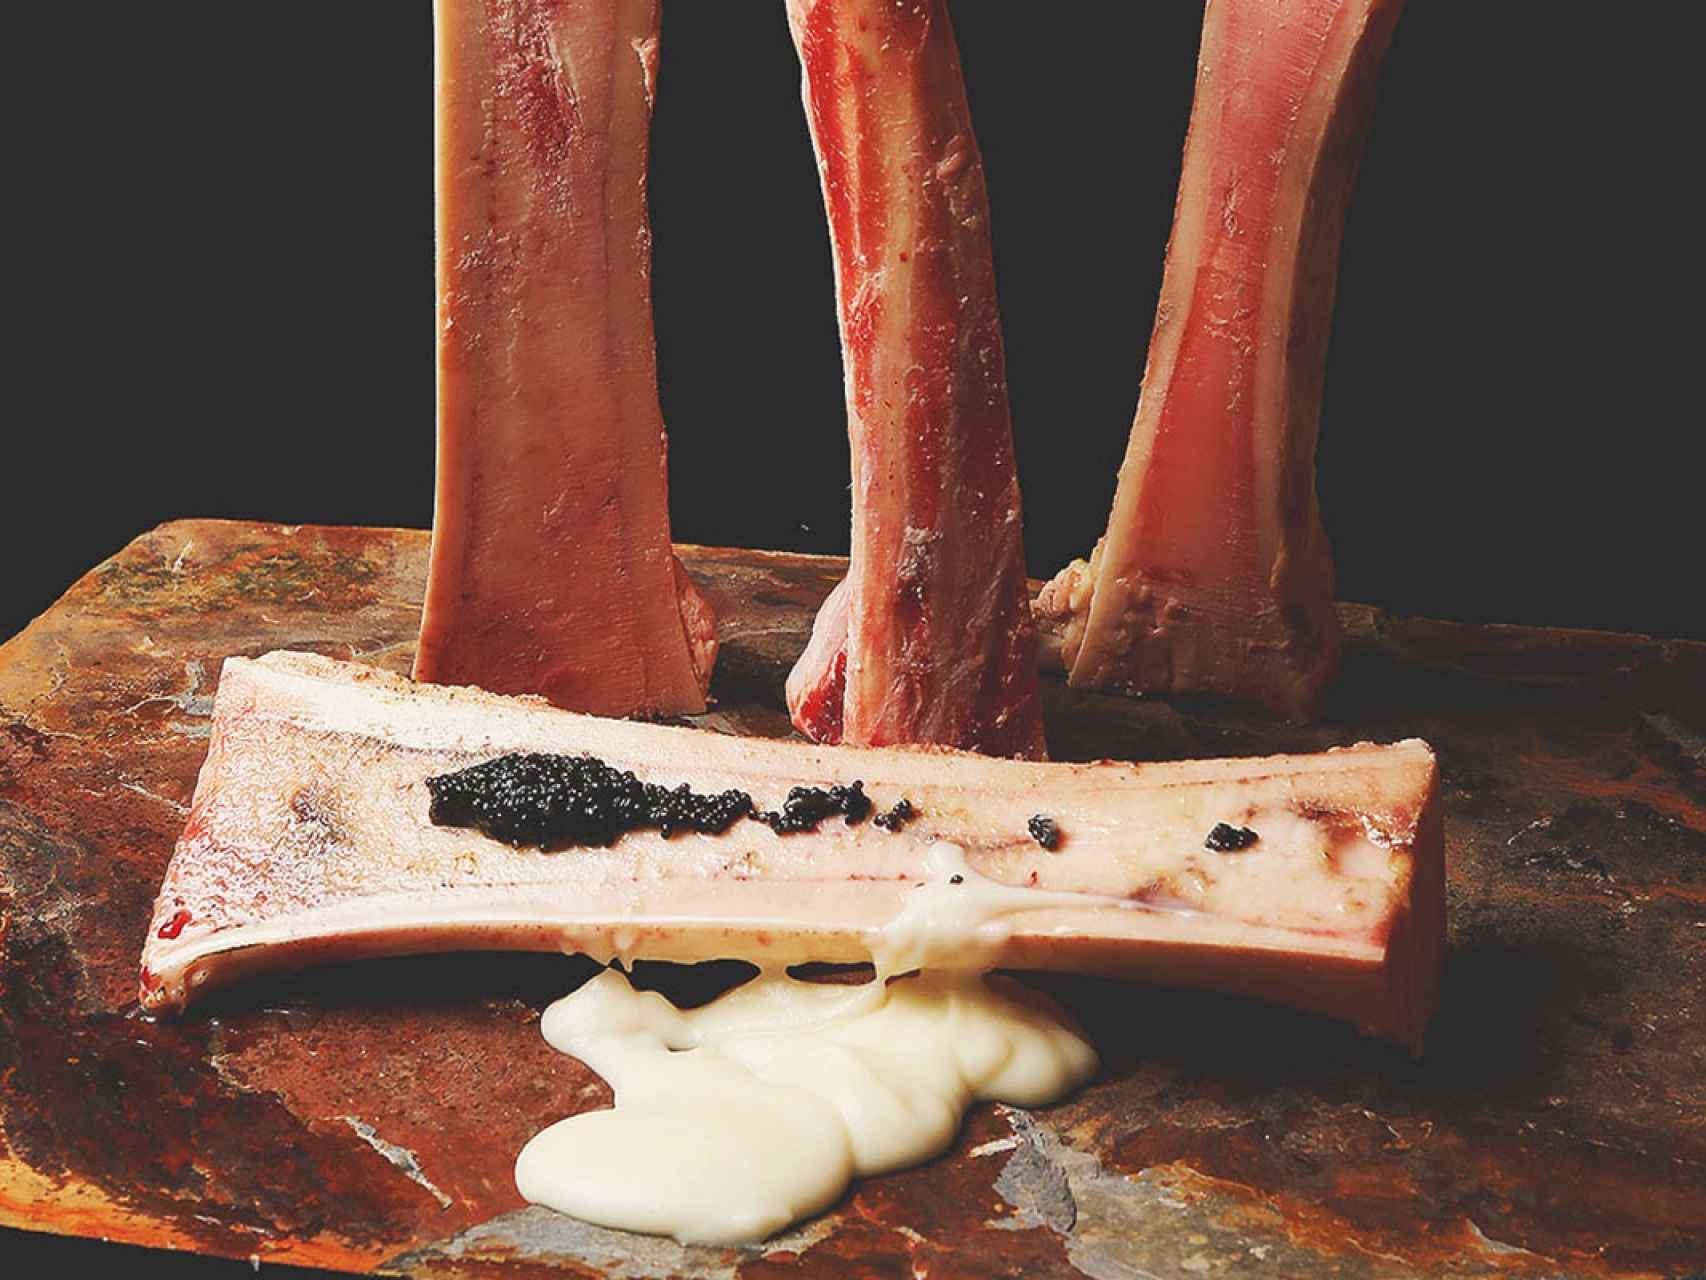 Tuétano de vaca asado con caviar de la Tasquita de Enfrente